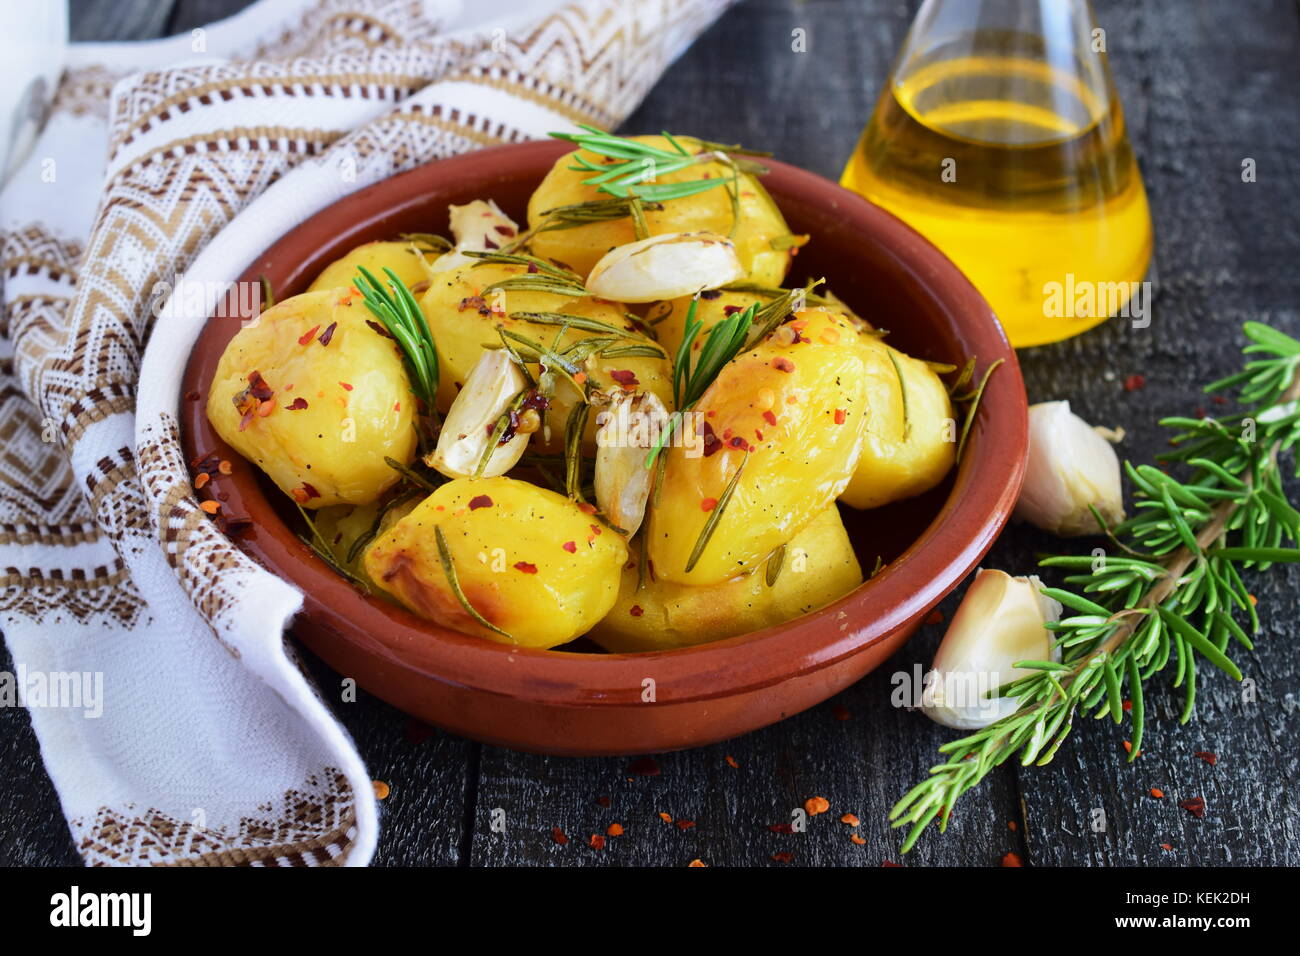 Ofen zubereitet Kartoffeln mit Rosmarin, Knoblauch, Olivenöl und Gewürzen in einem traditionellen Keramik Schüssel. mediterrane Lebensart. gesunde Ernährung Konzept. Stockfoto